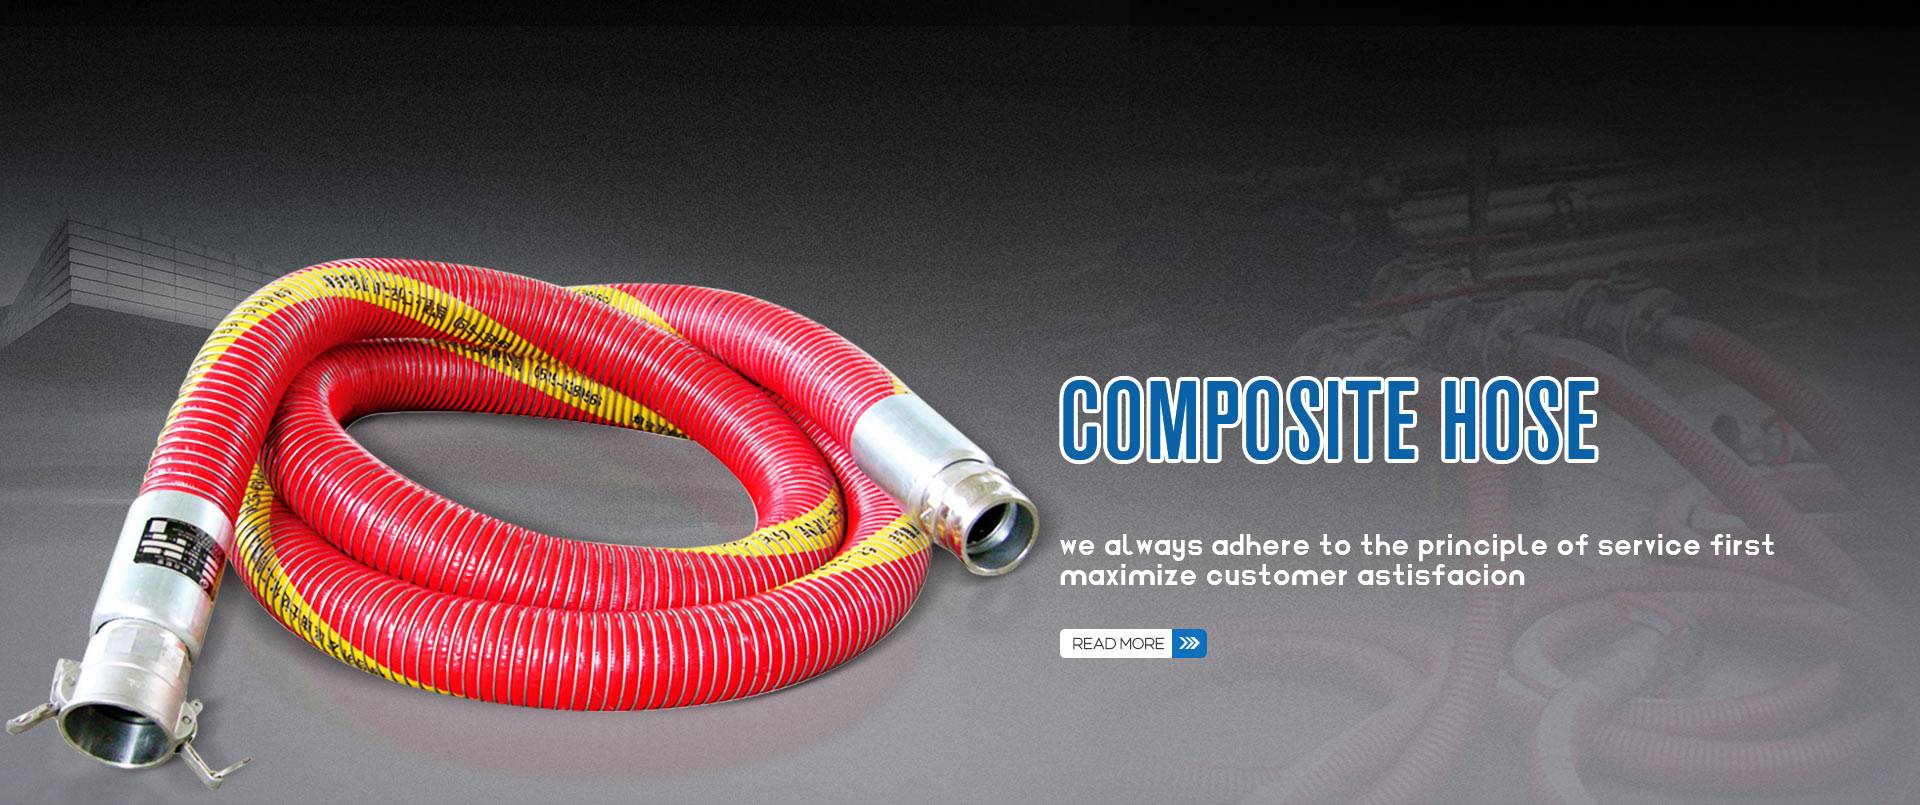 composite-hose